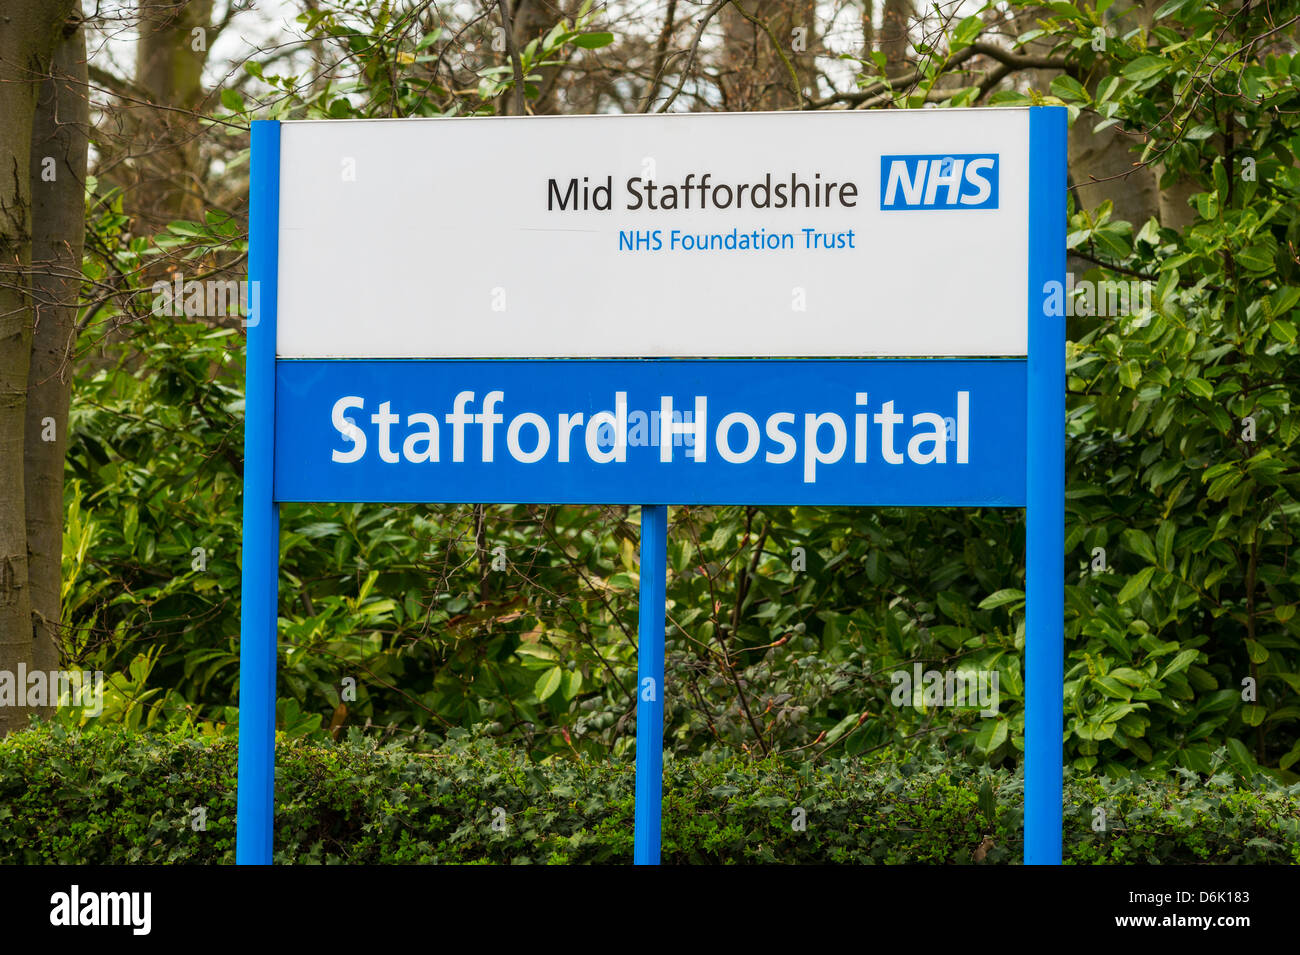 Stafford segni dell'ospedale, metà Staffordshire NHS Foundation Trust sotto inchiesta a causa di alti tassi di mortalità. Foto Stock